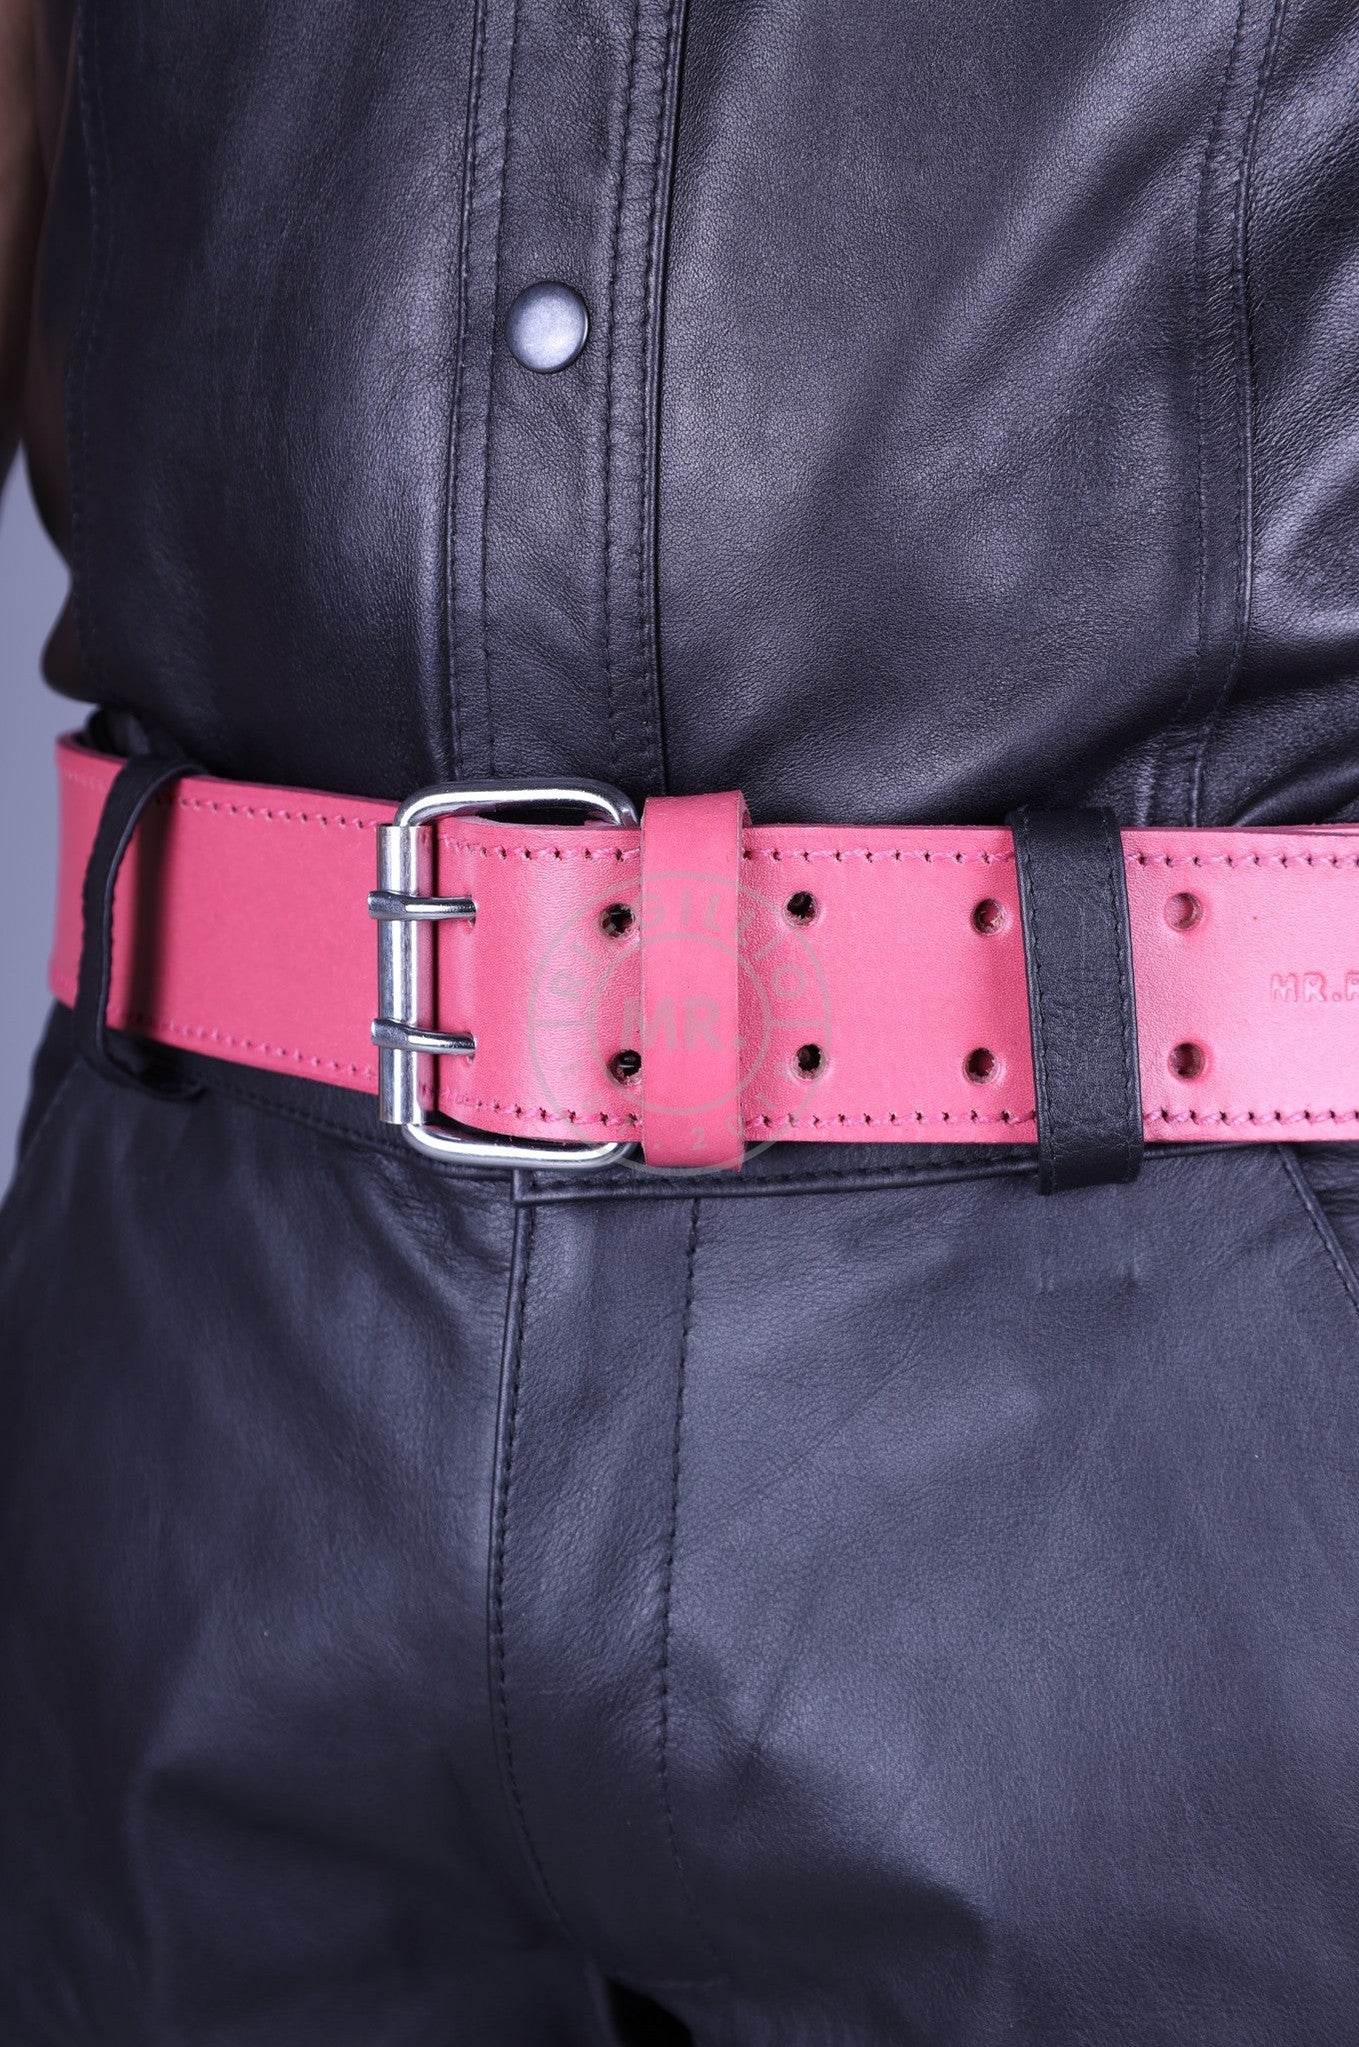 Pink Leather Belt at MR. Riegillio